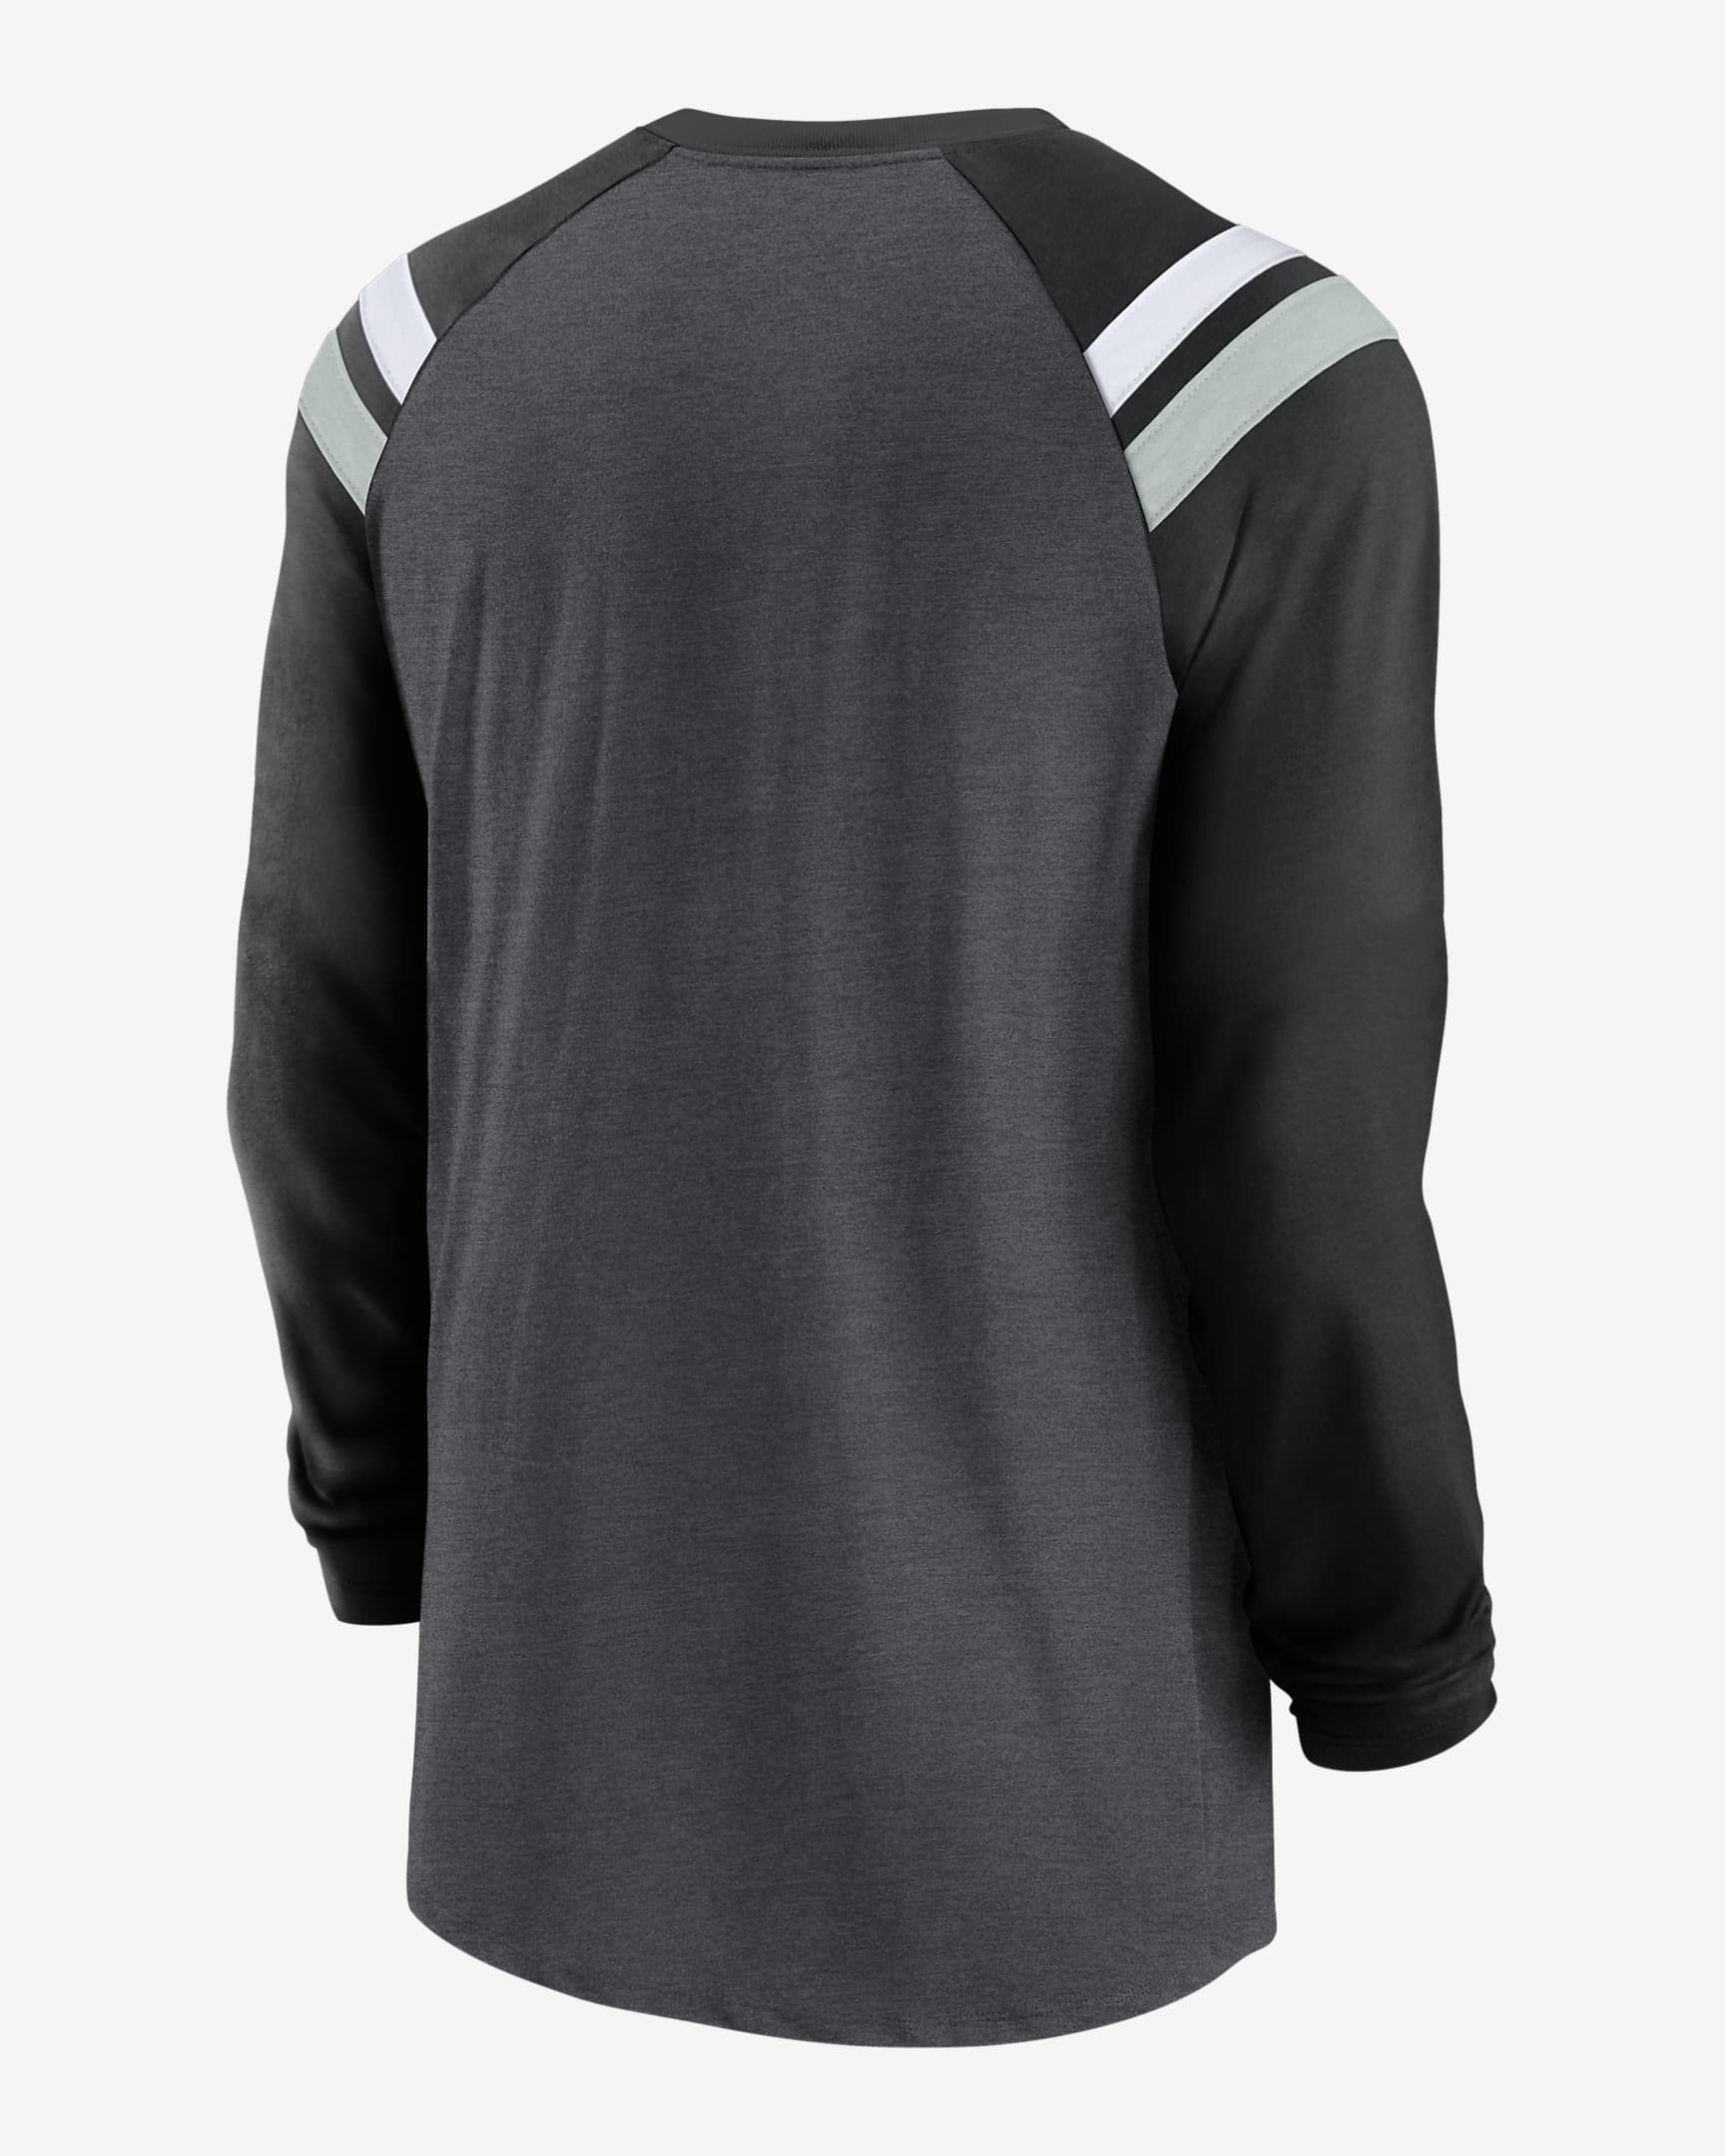 Nike Athletic Fashion (NFL Las Vegas Raiders) Men's Long-Sleeve T-Shirt ...